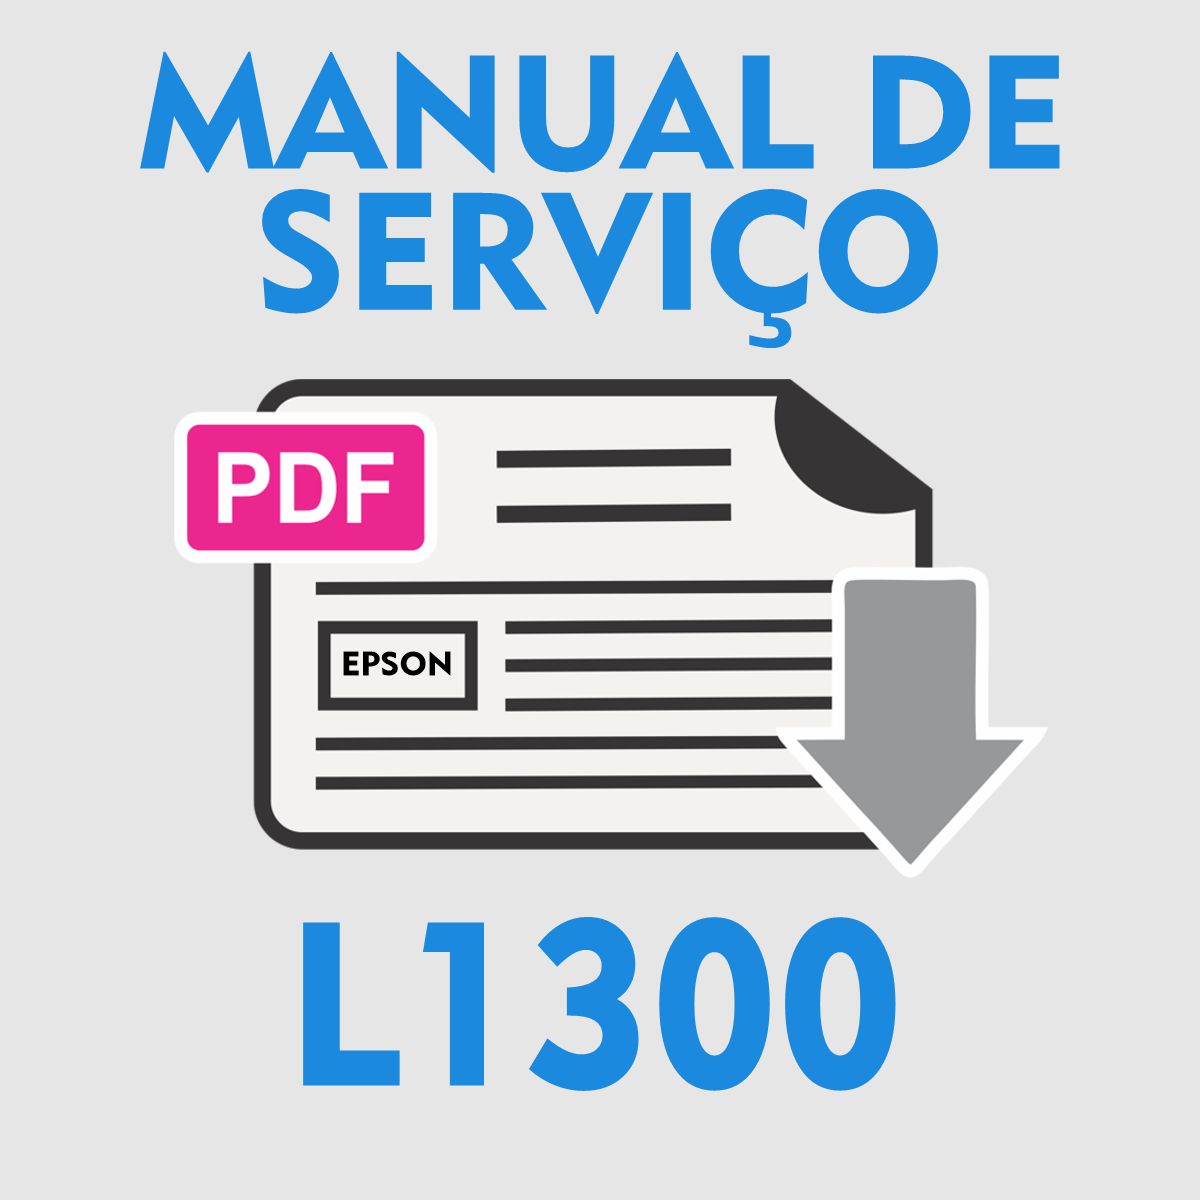 EPSON L1300 | MANUAL DE SERVIÇO